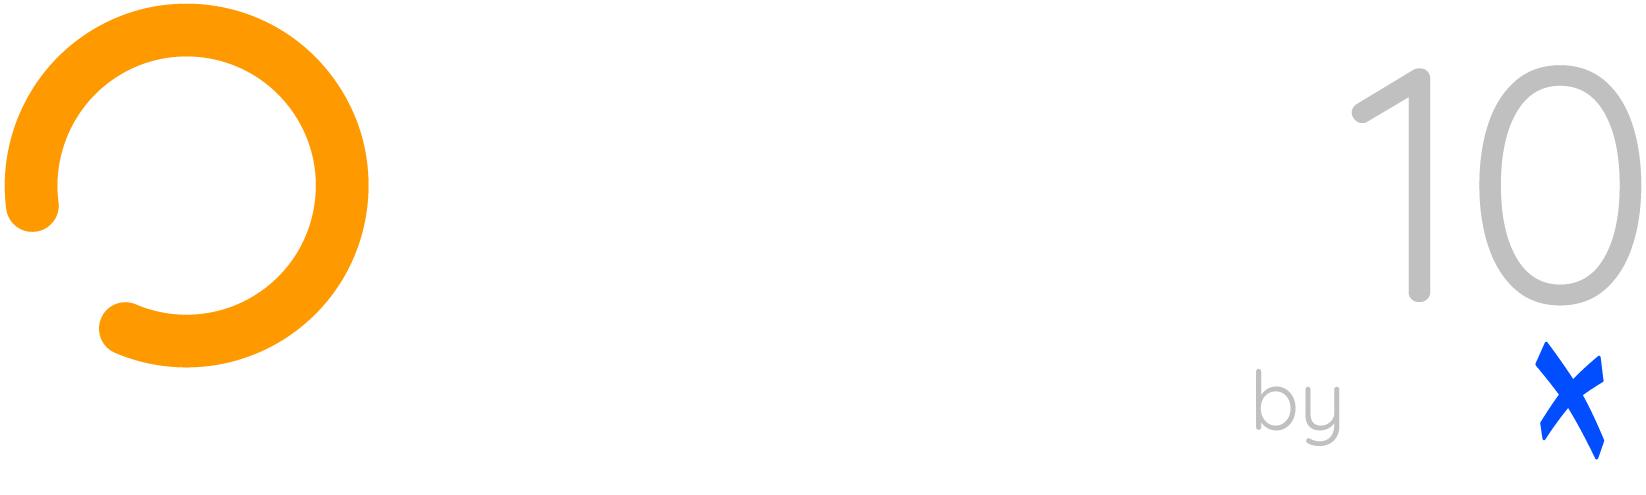 warp10